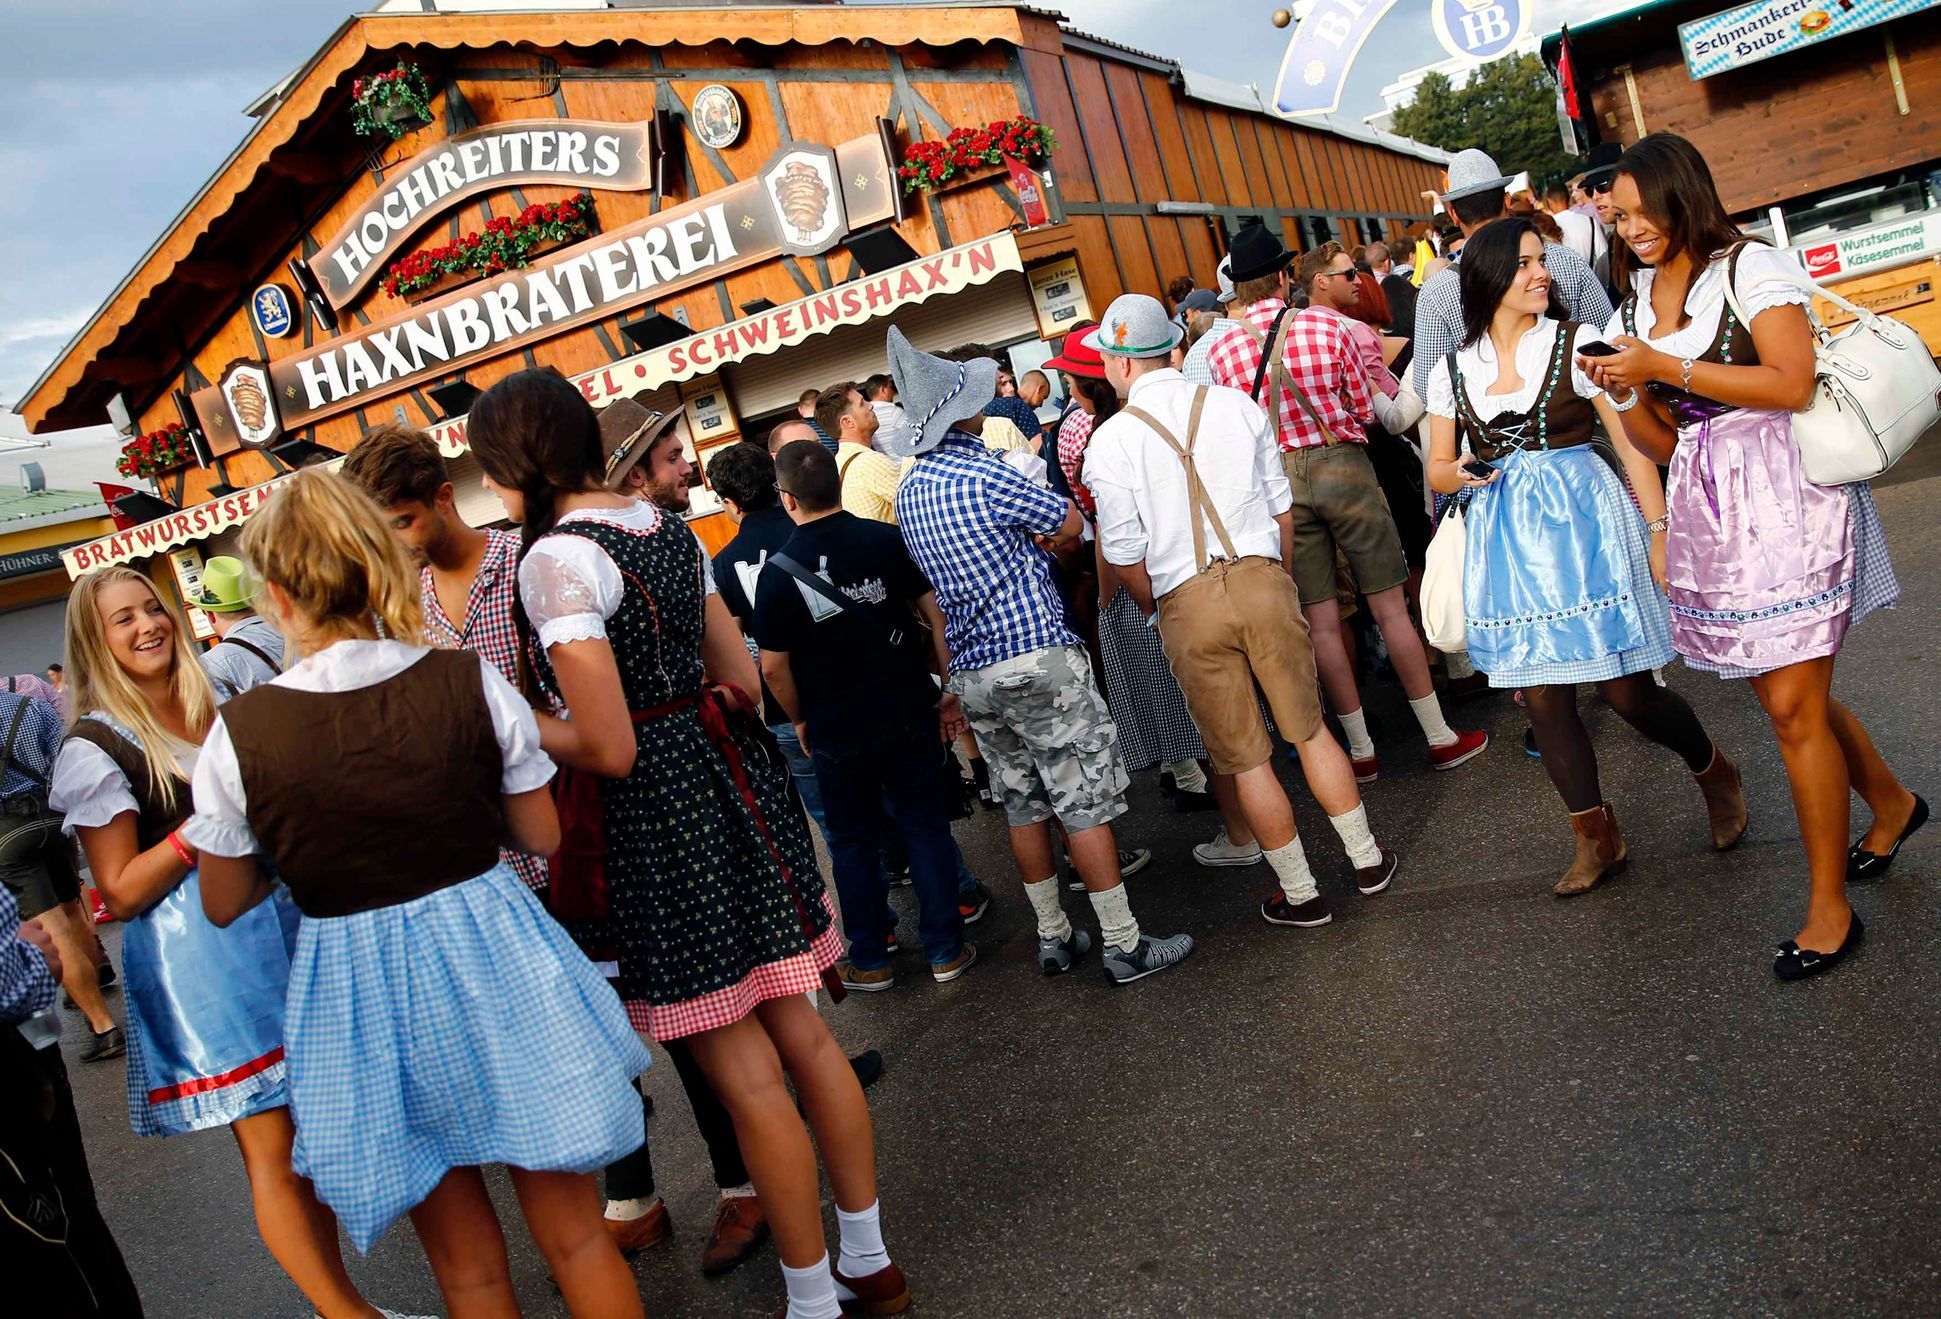 Návštěvníci 181. Oktoberfestu v tradičních krojích čekající před pivním stanem v Mnichově.